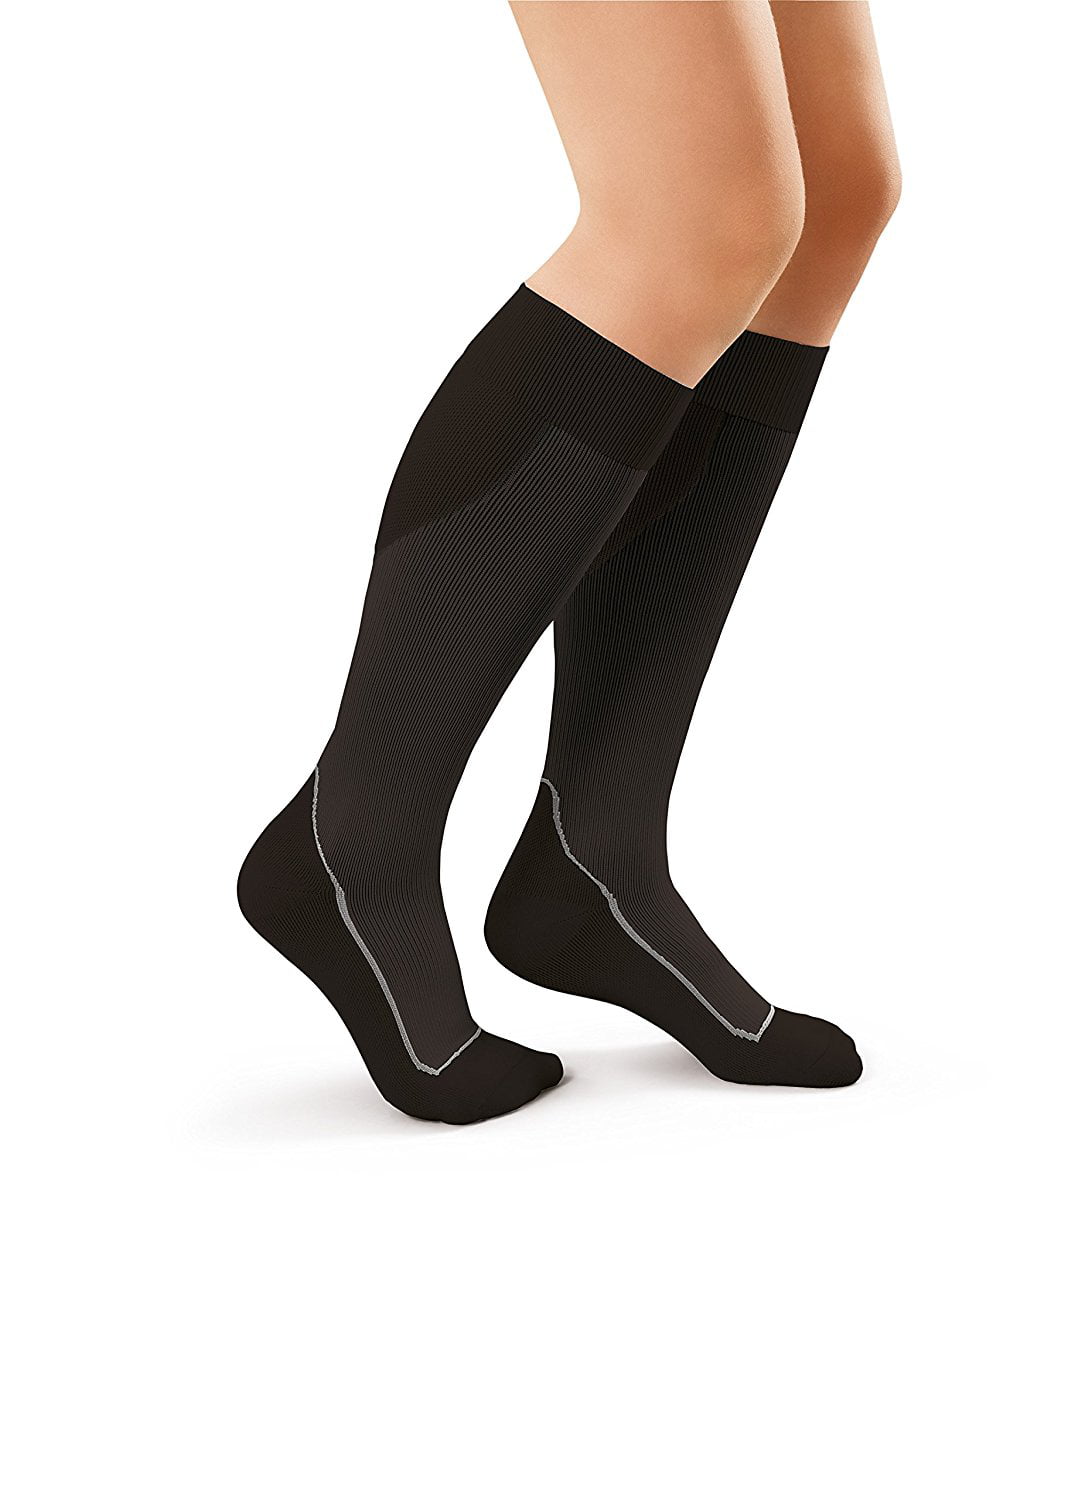 Jobst - Sport Compression Sock Knee Closed Toe 15-20 mmHg, Cool Black ...